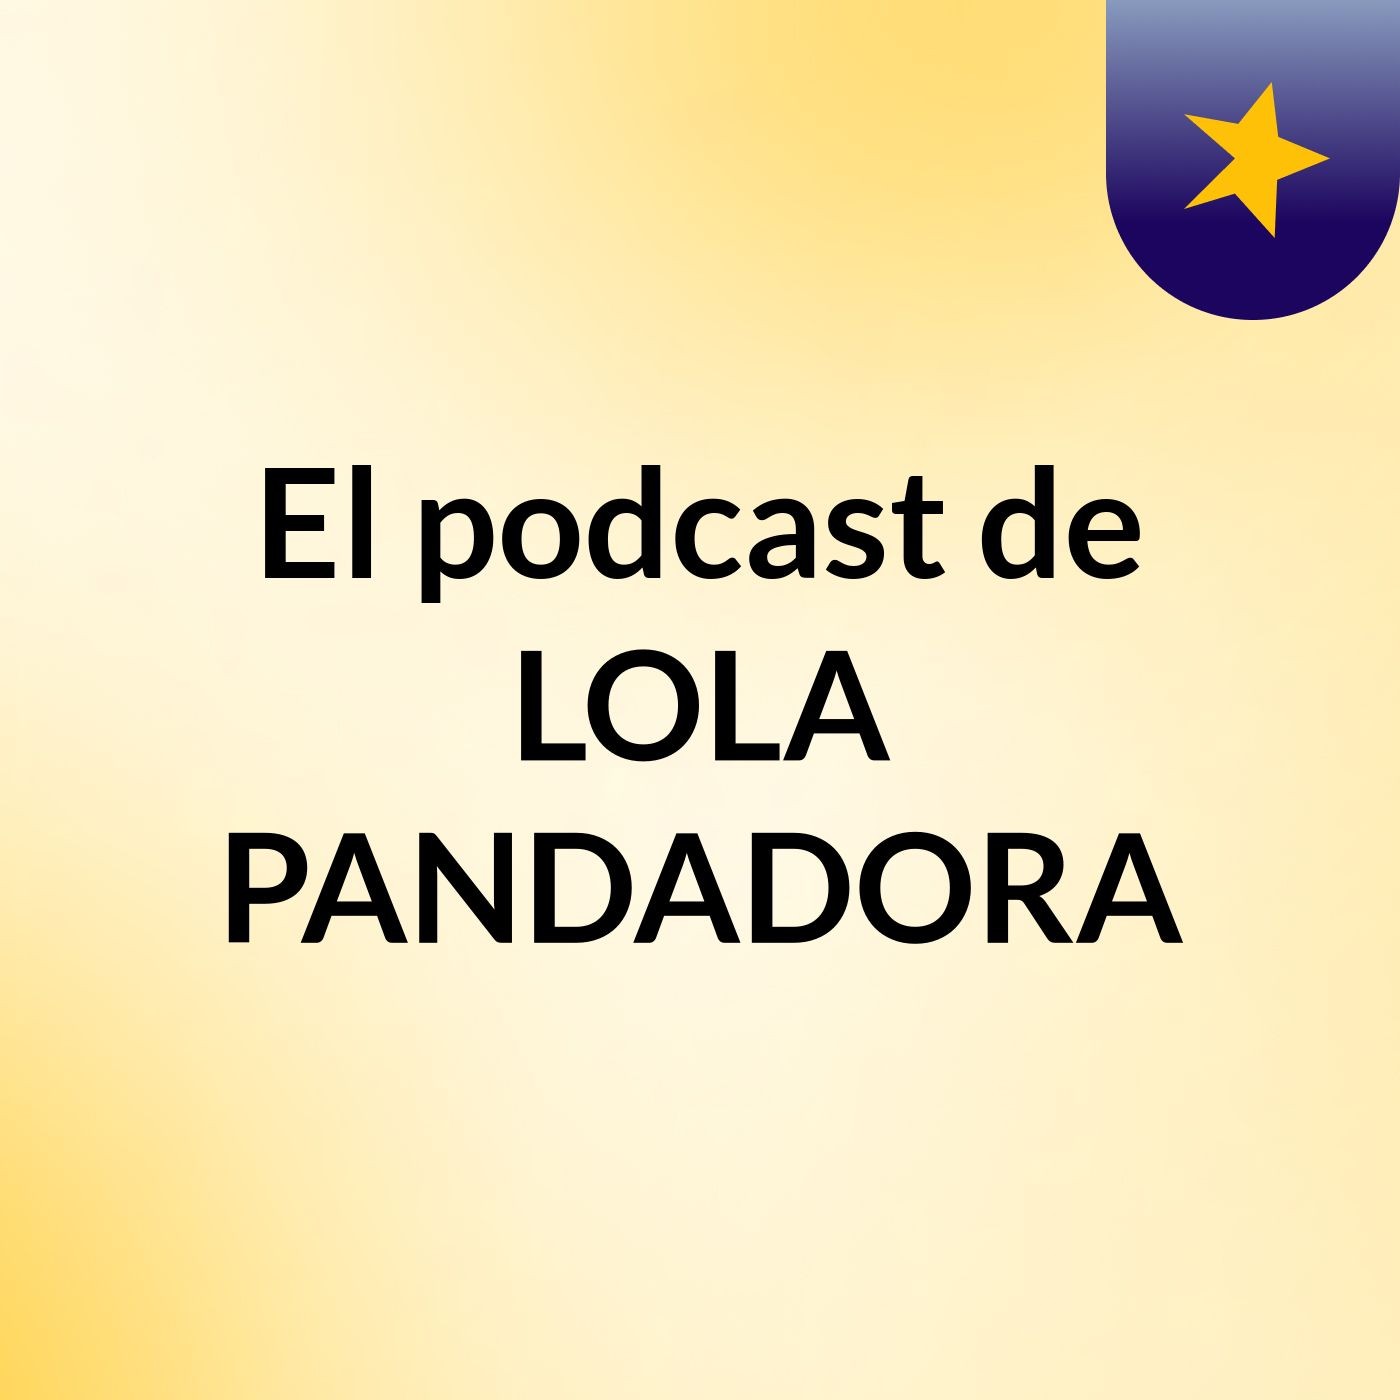 Episodio 4 - El podcast de LOLA PANDADORA